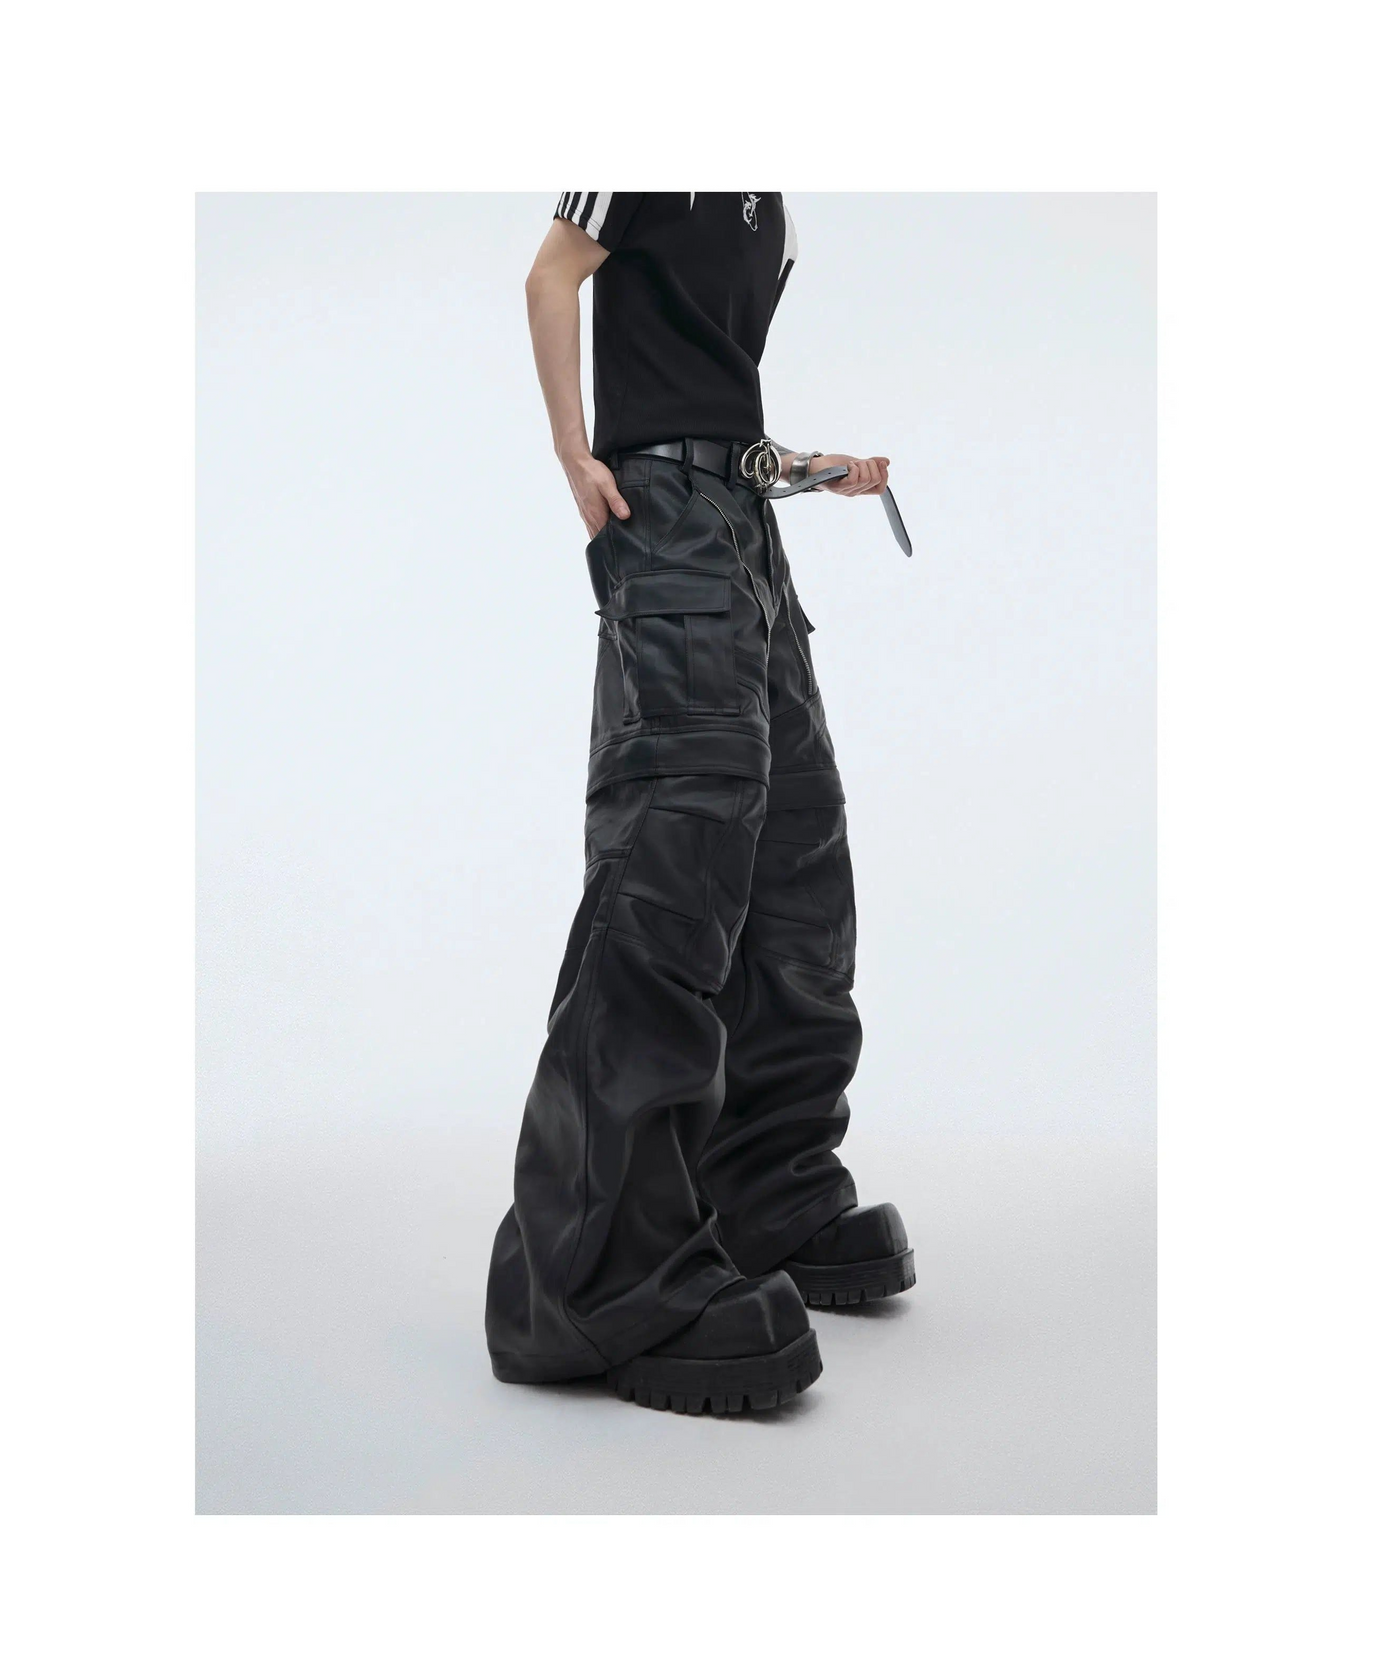 Zipped Detachable Leather Pants Korean Street Fashion Pants By Argue Culture Shop Online at OH Vault